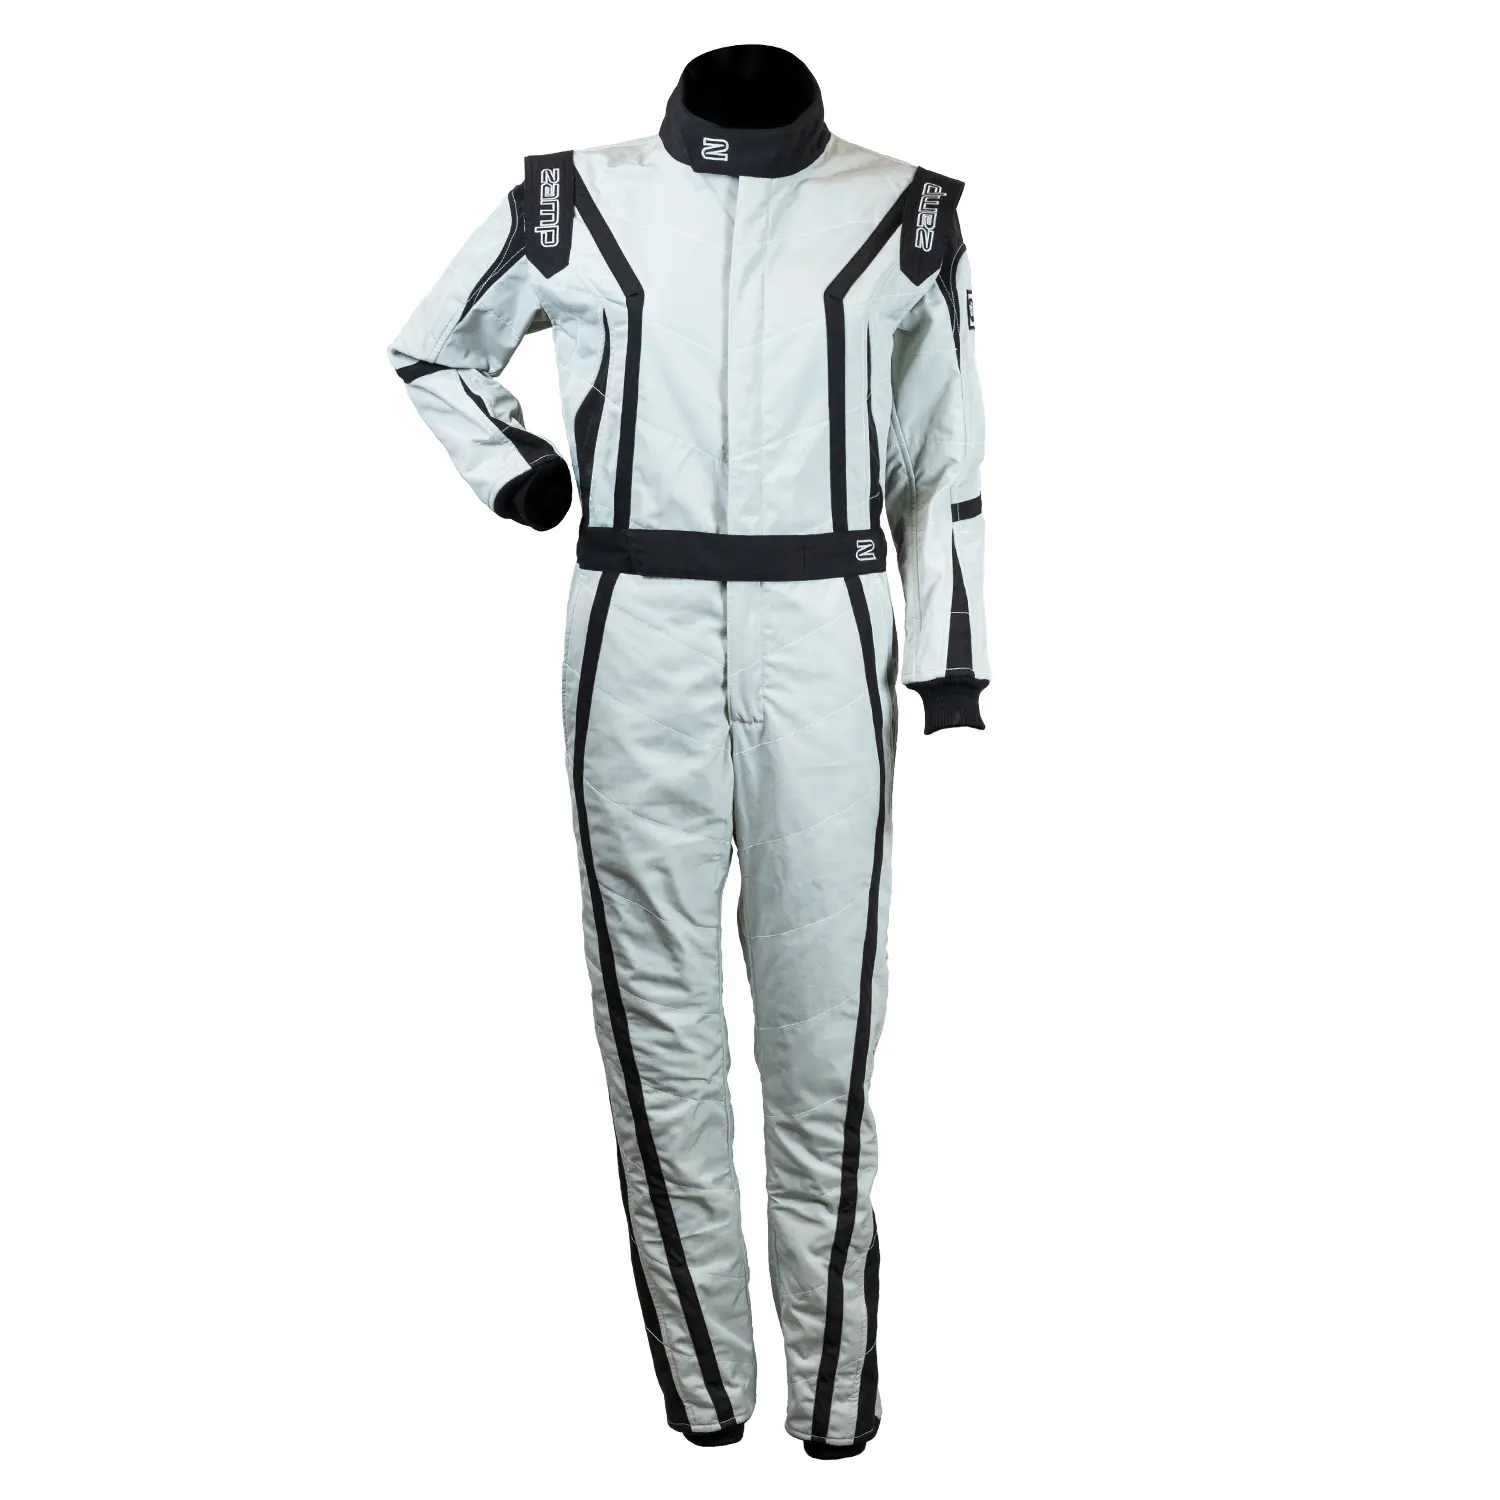 ZR-52F FIA Race Suit